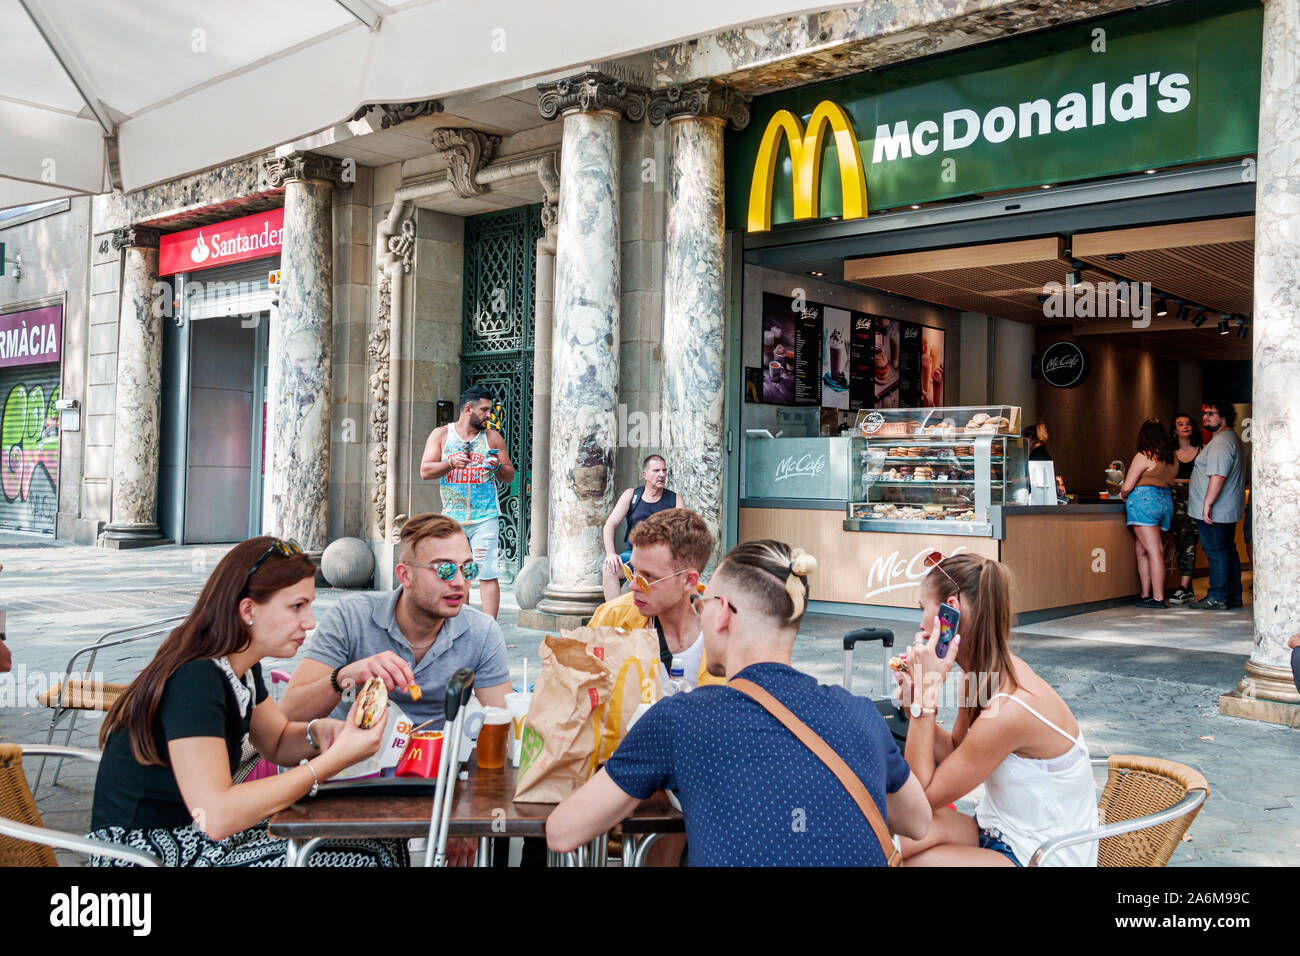 Barcelona Spanien, Catalonia Passeig de Gracia, McDonald's, Restaurant, Fast Food, draußen, Gehsteig-Tisch, Essen im Freien, Mann, Frau, junge Erwachsene, Freunde, Essen Stockfoto